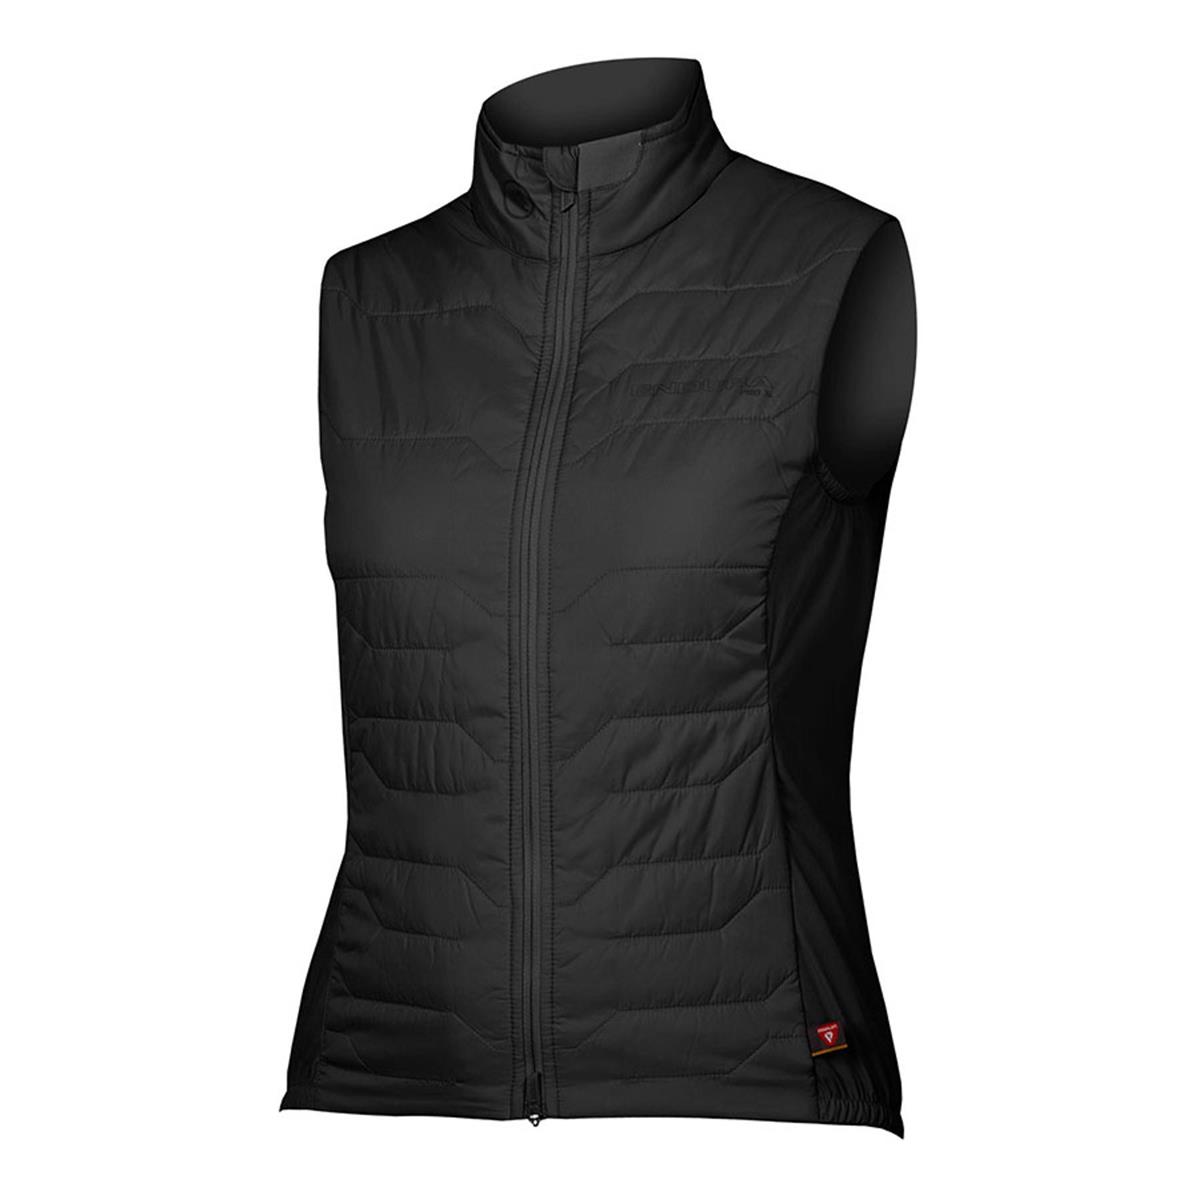 Pro SL PrimaLoft Rain/Windproof Vest Women's Vest Black size XL